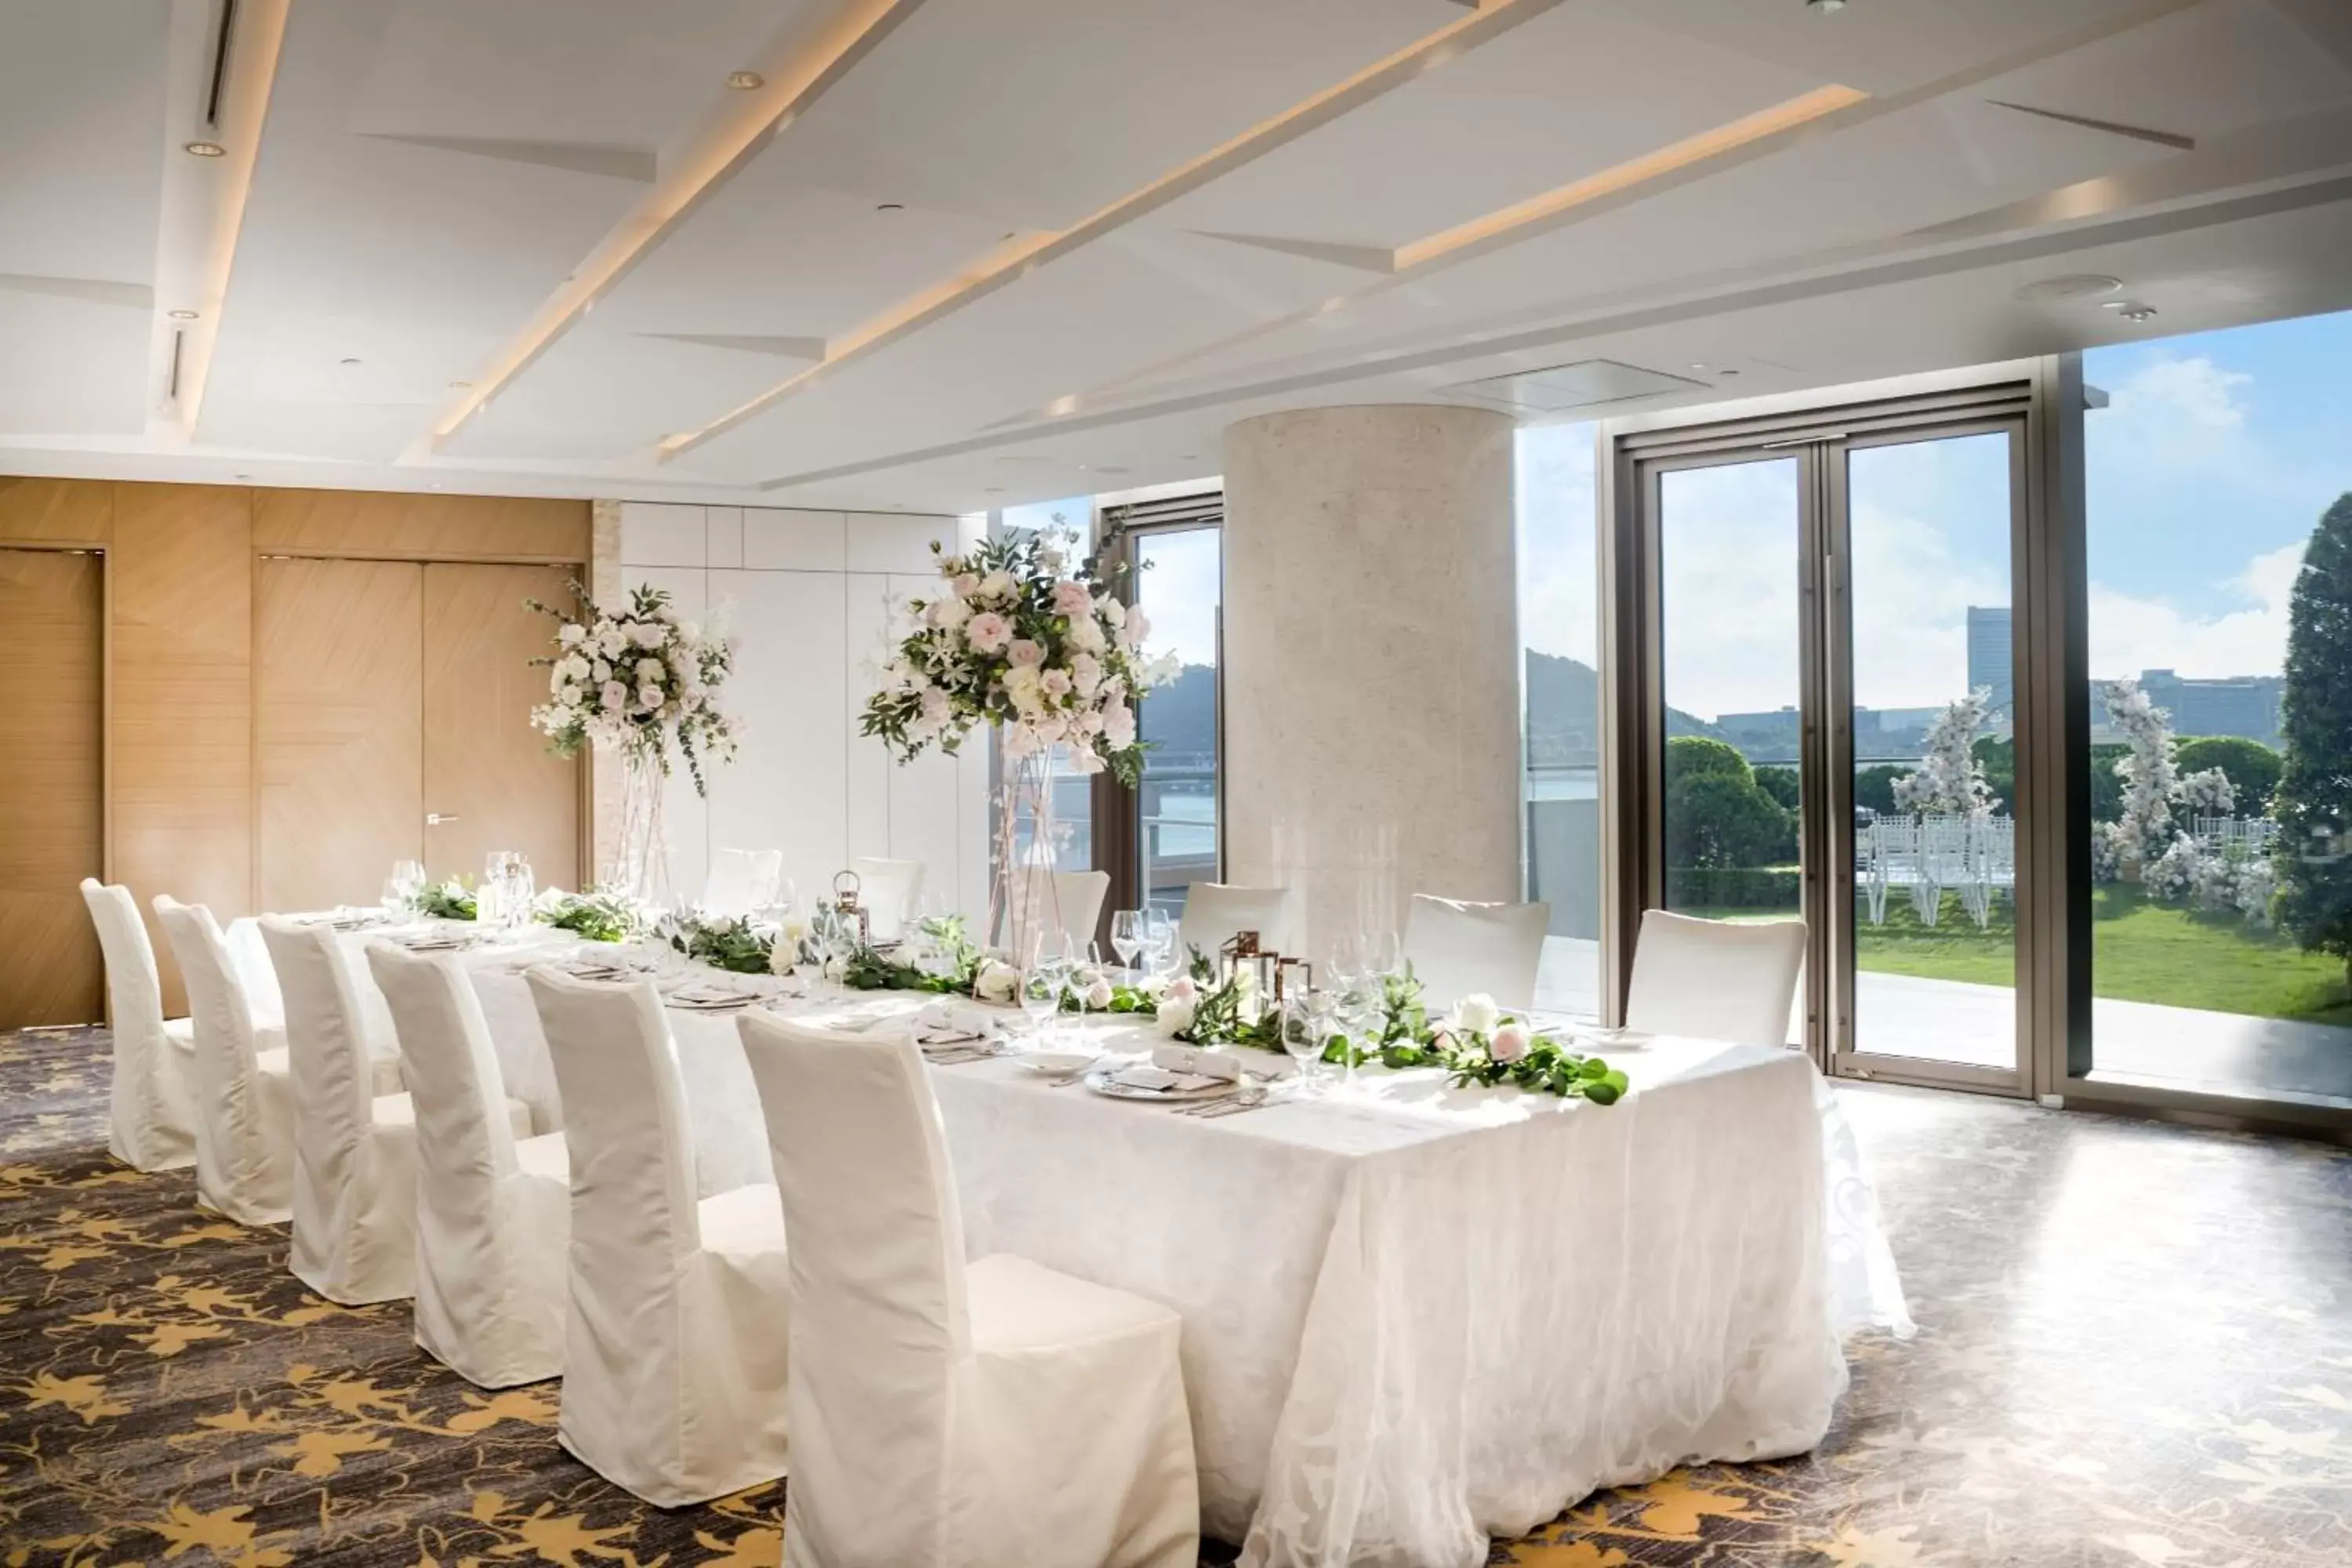 Banquet/Function facilities, Banquet Facilities in Sheraton Hong Kong Tung Chung Hotel